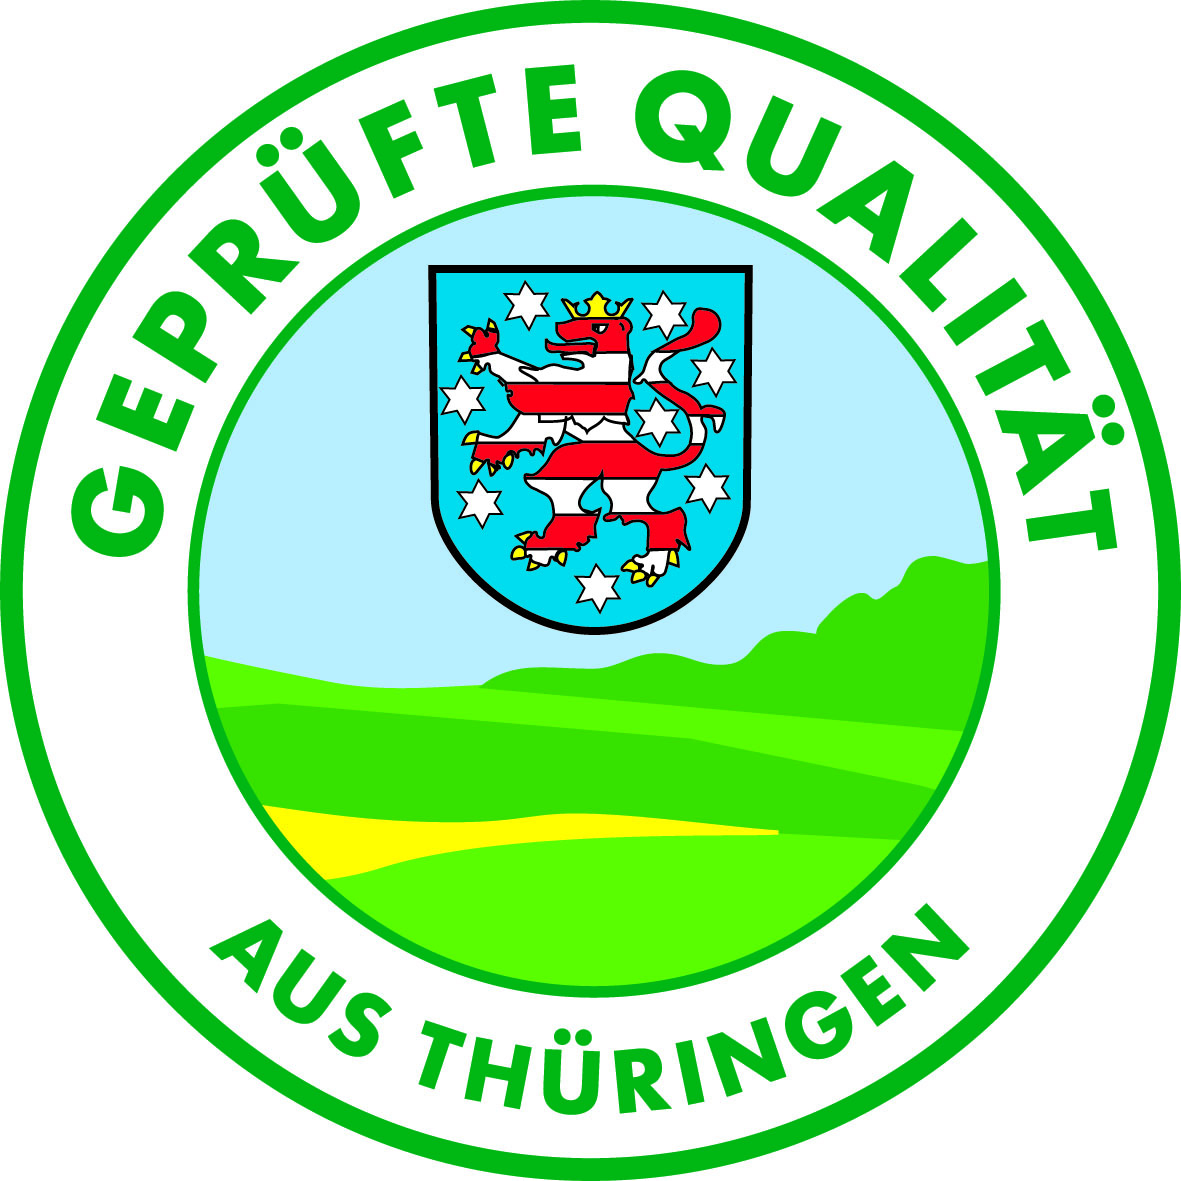 Das Thüringer Qualitätszeichen "Geprüfte Qualität aus Thüringen". Bildrechte: TMIL